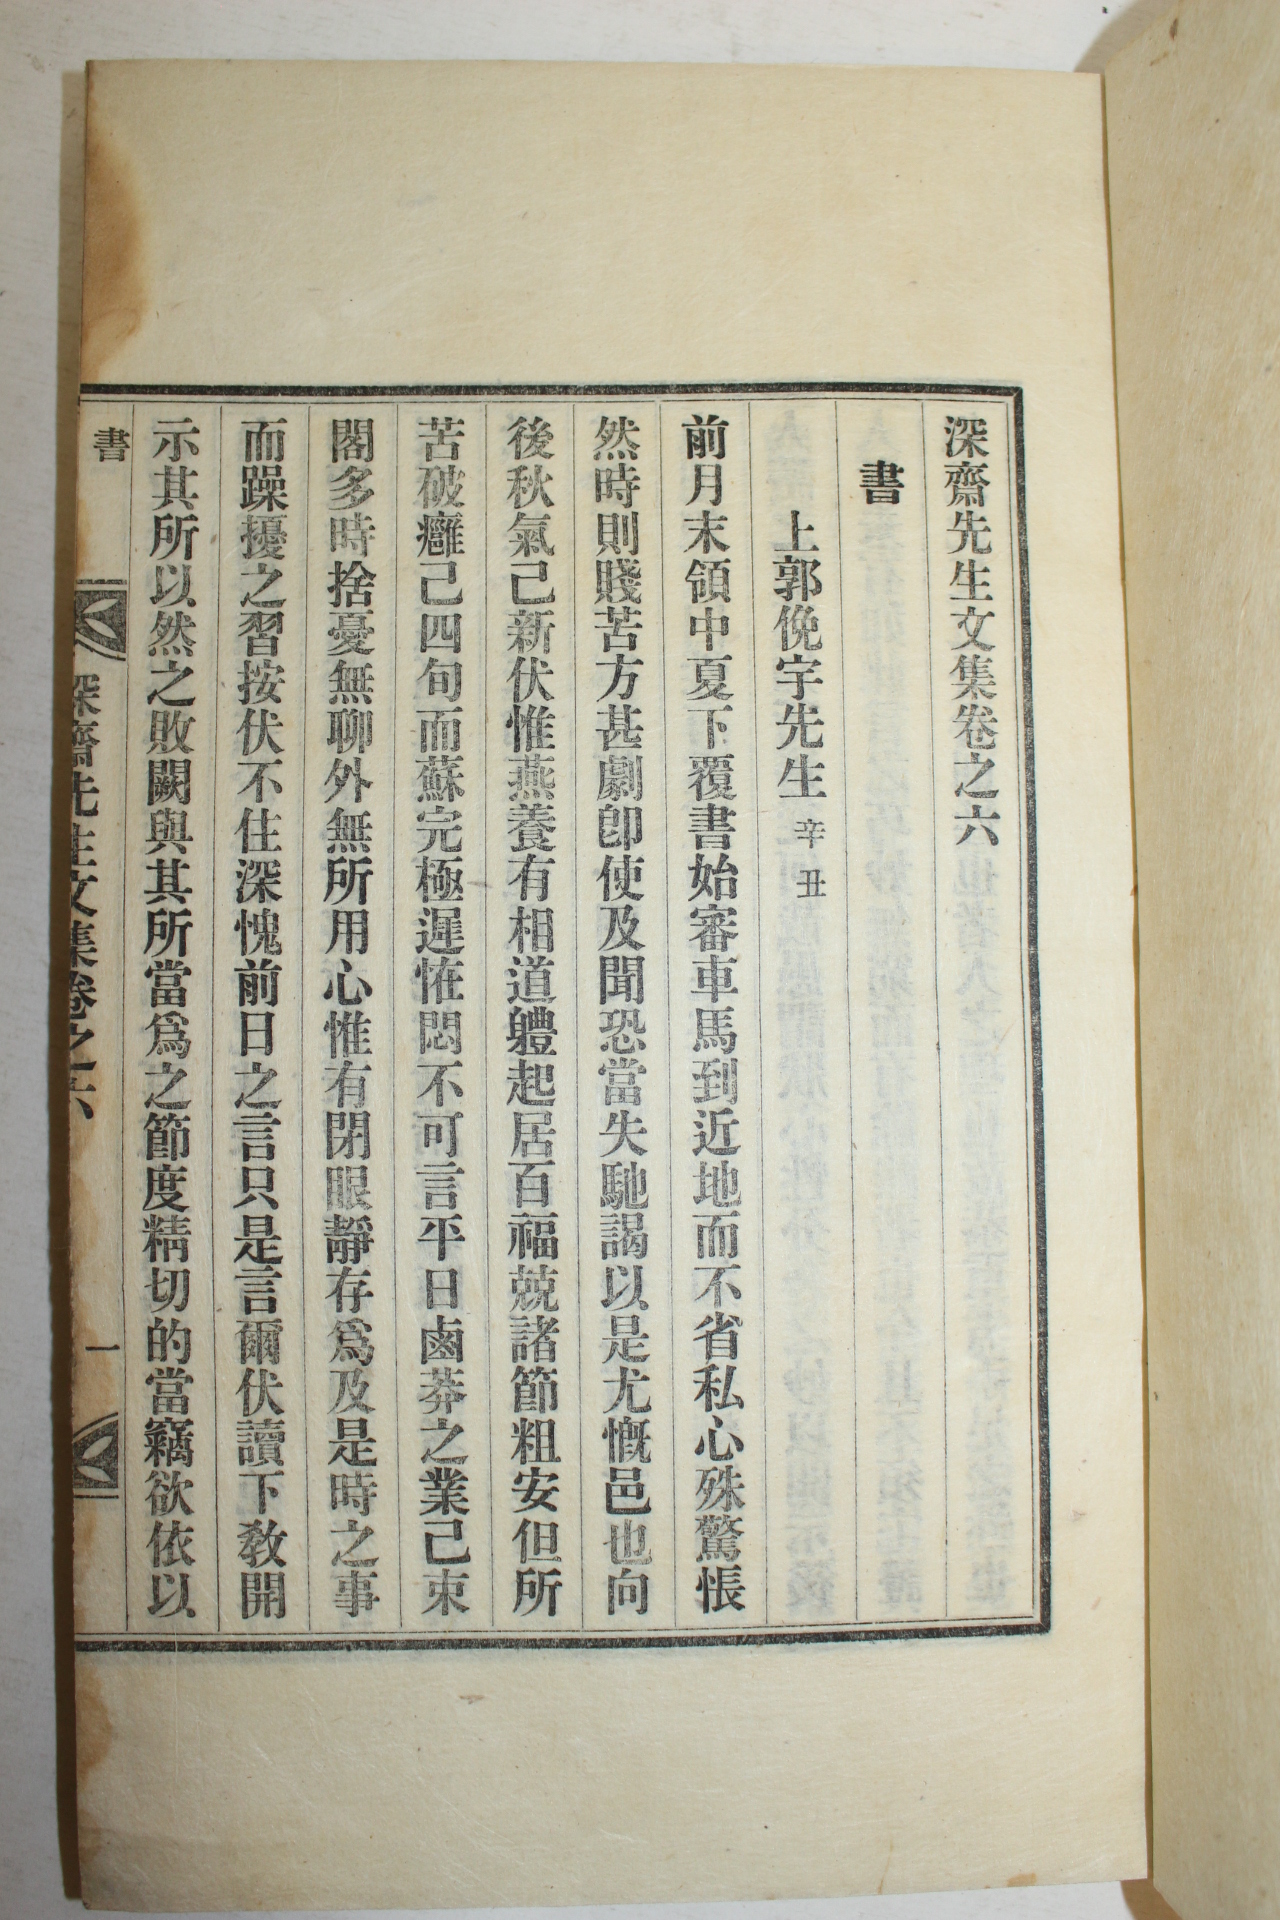 1935년 조긍섭(曺兢燮) 심재선생문집(深齋先生文集) 11책